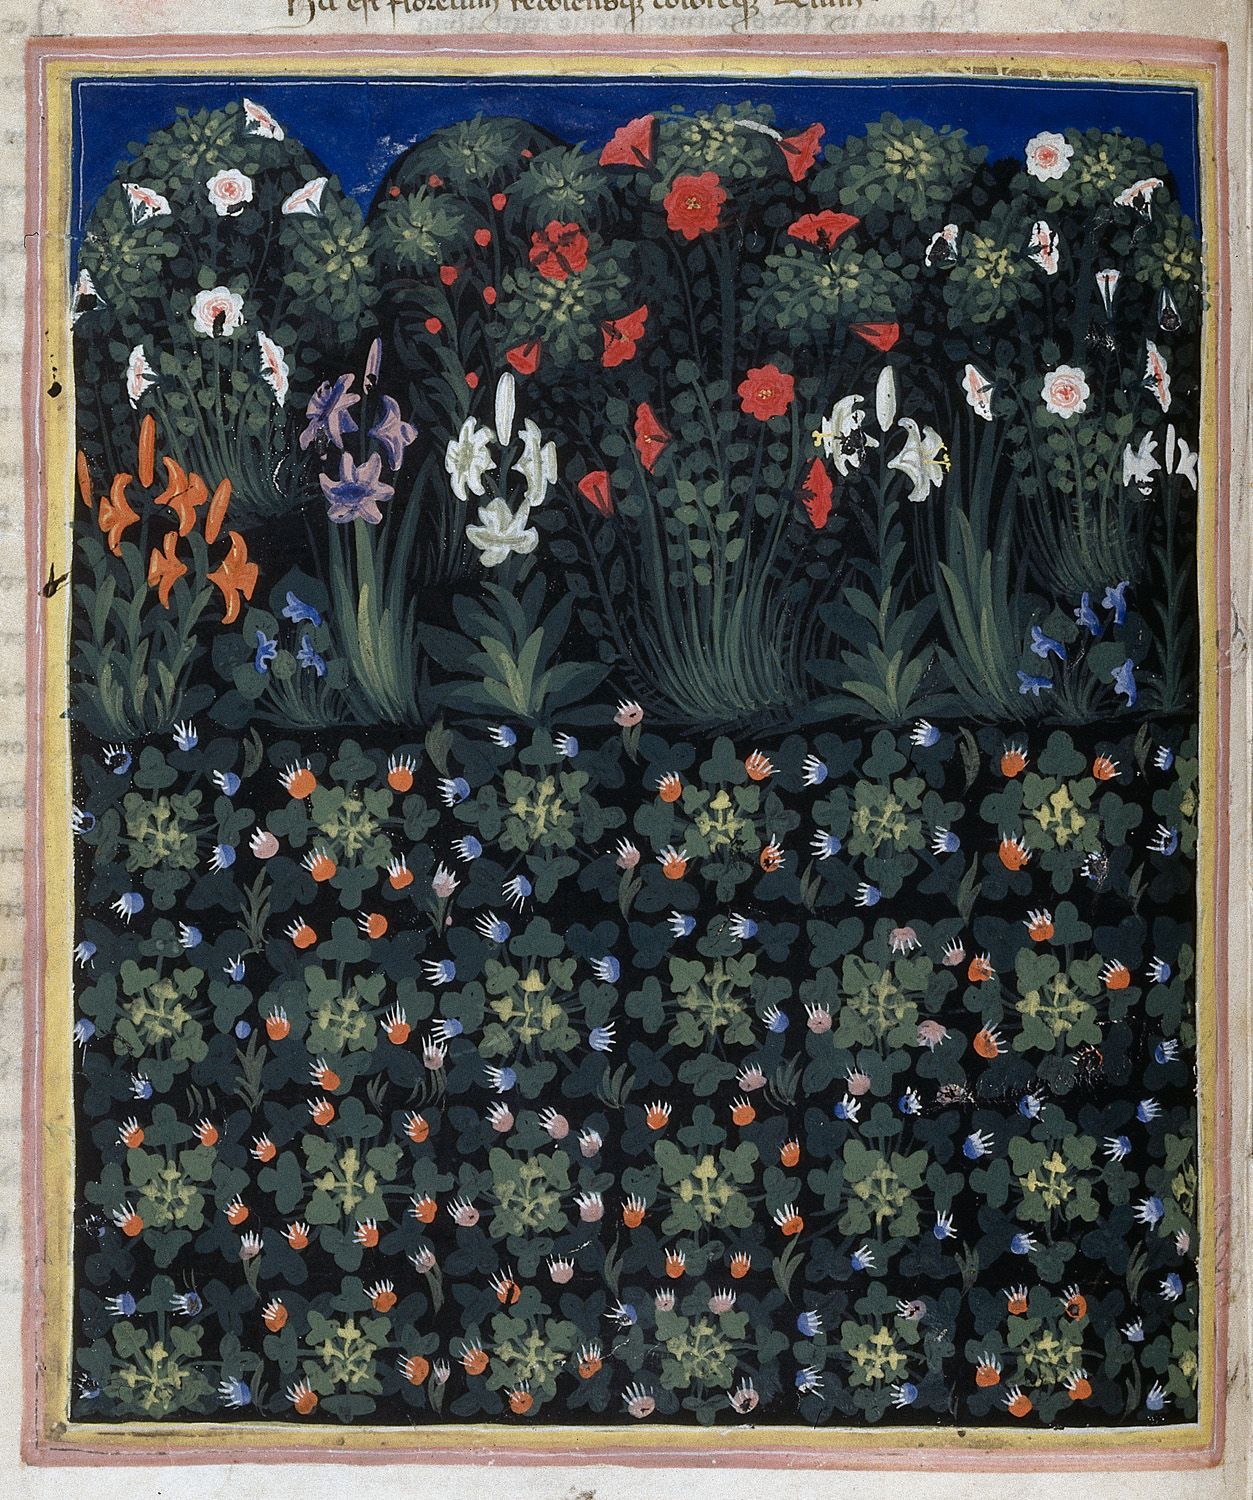 정원(Garden) by Pacino di Buonaguida - 1335-1340 - 49 x 35 cm 